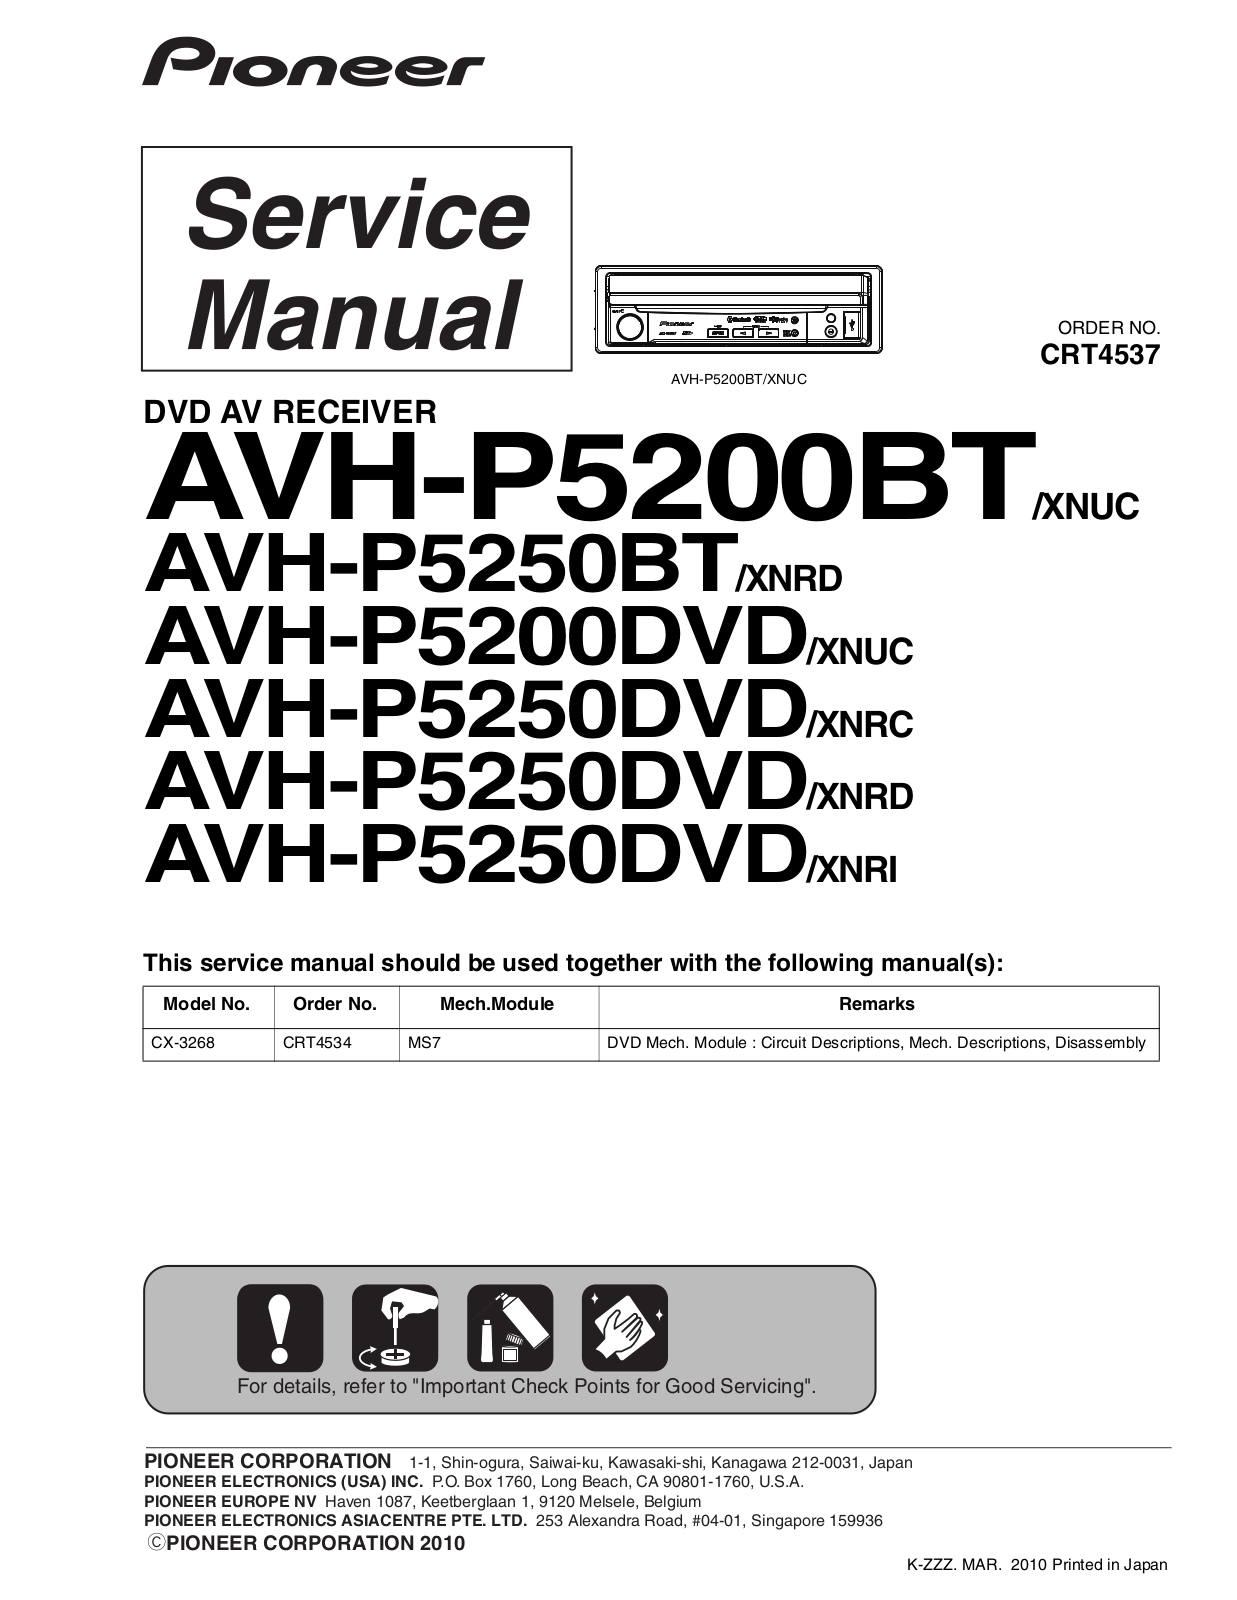 Pioneer AVHP-5200-BT, AVHP-5200-DVD, AVHP-5250-BT, AVHP-5250-DVD Service manual